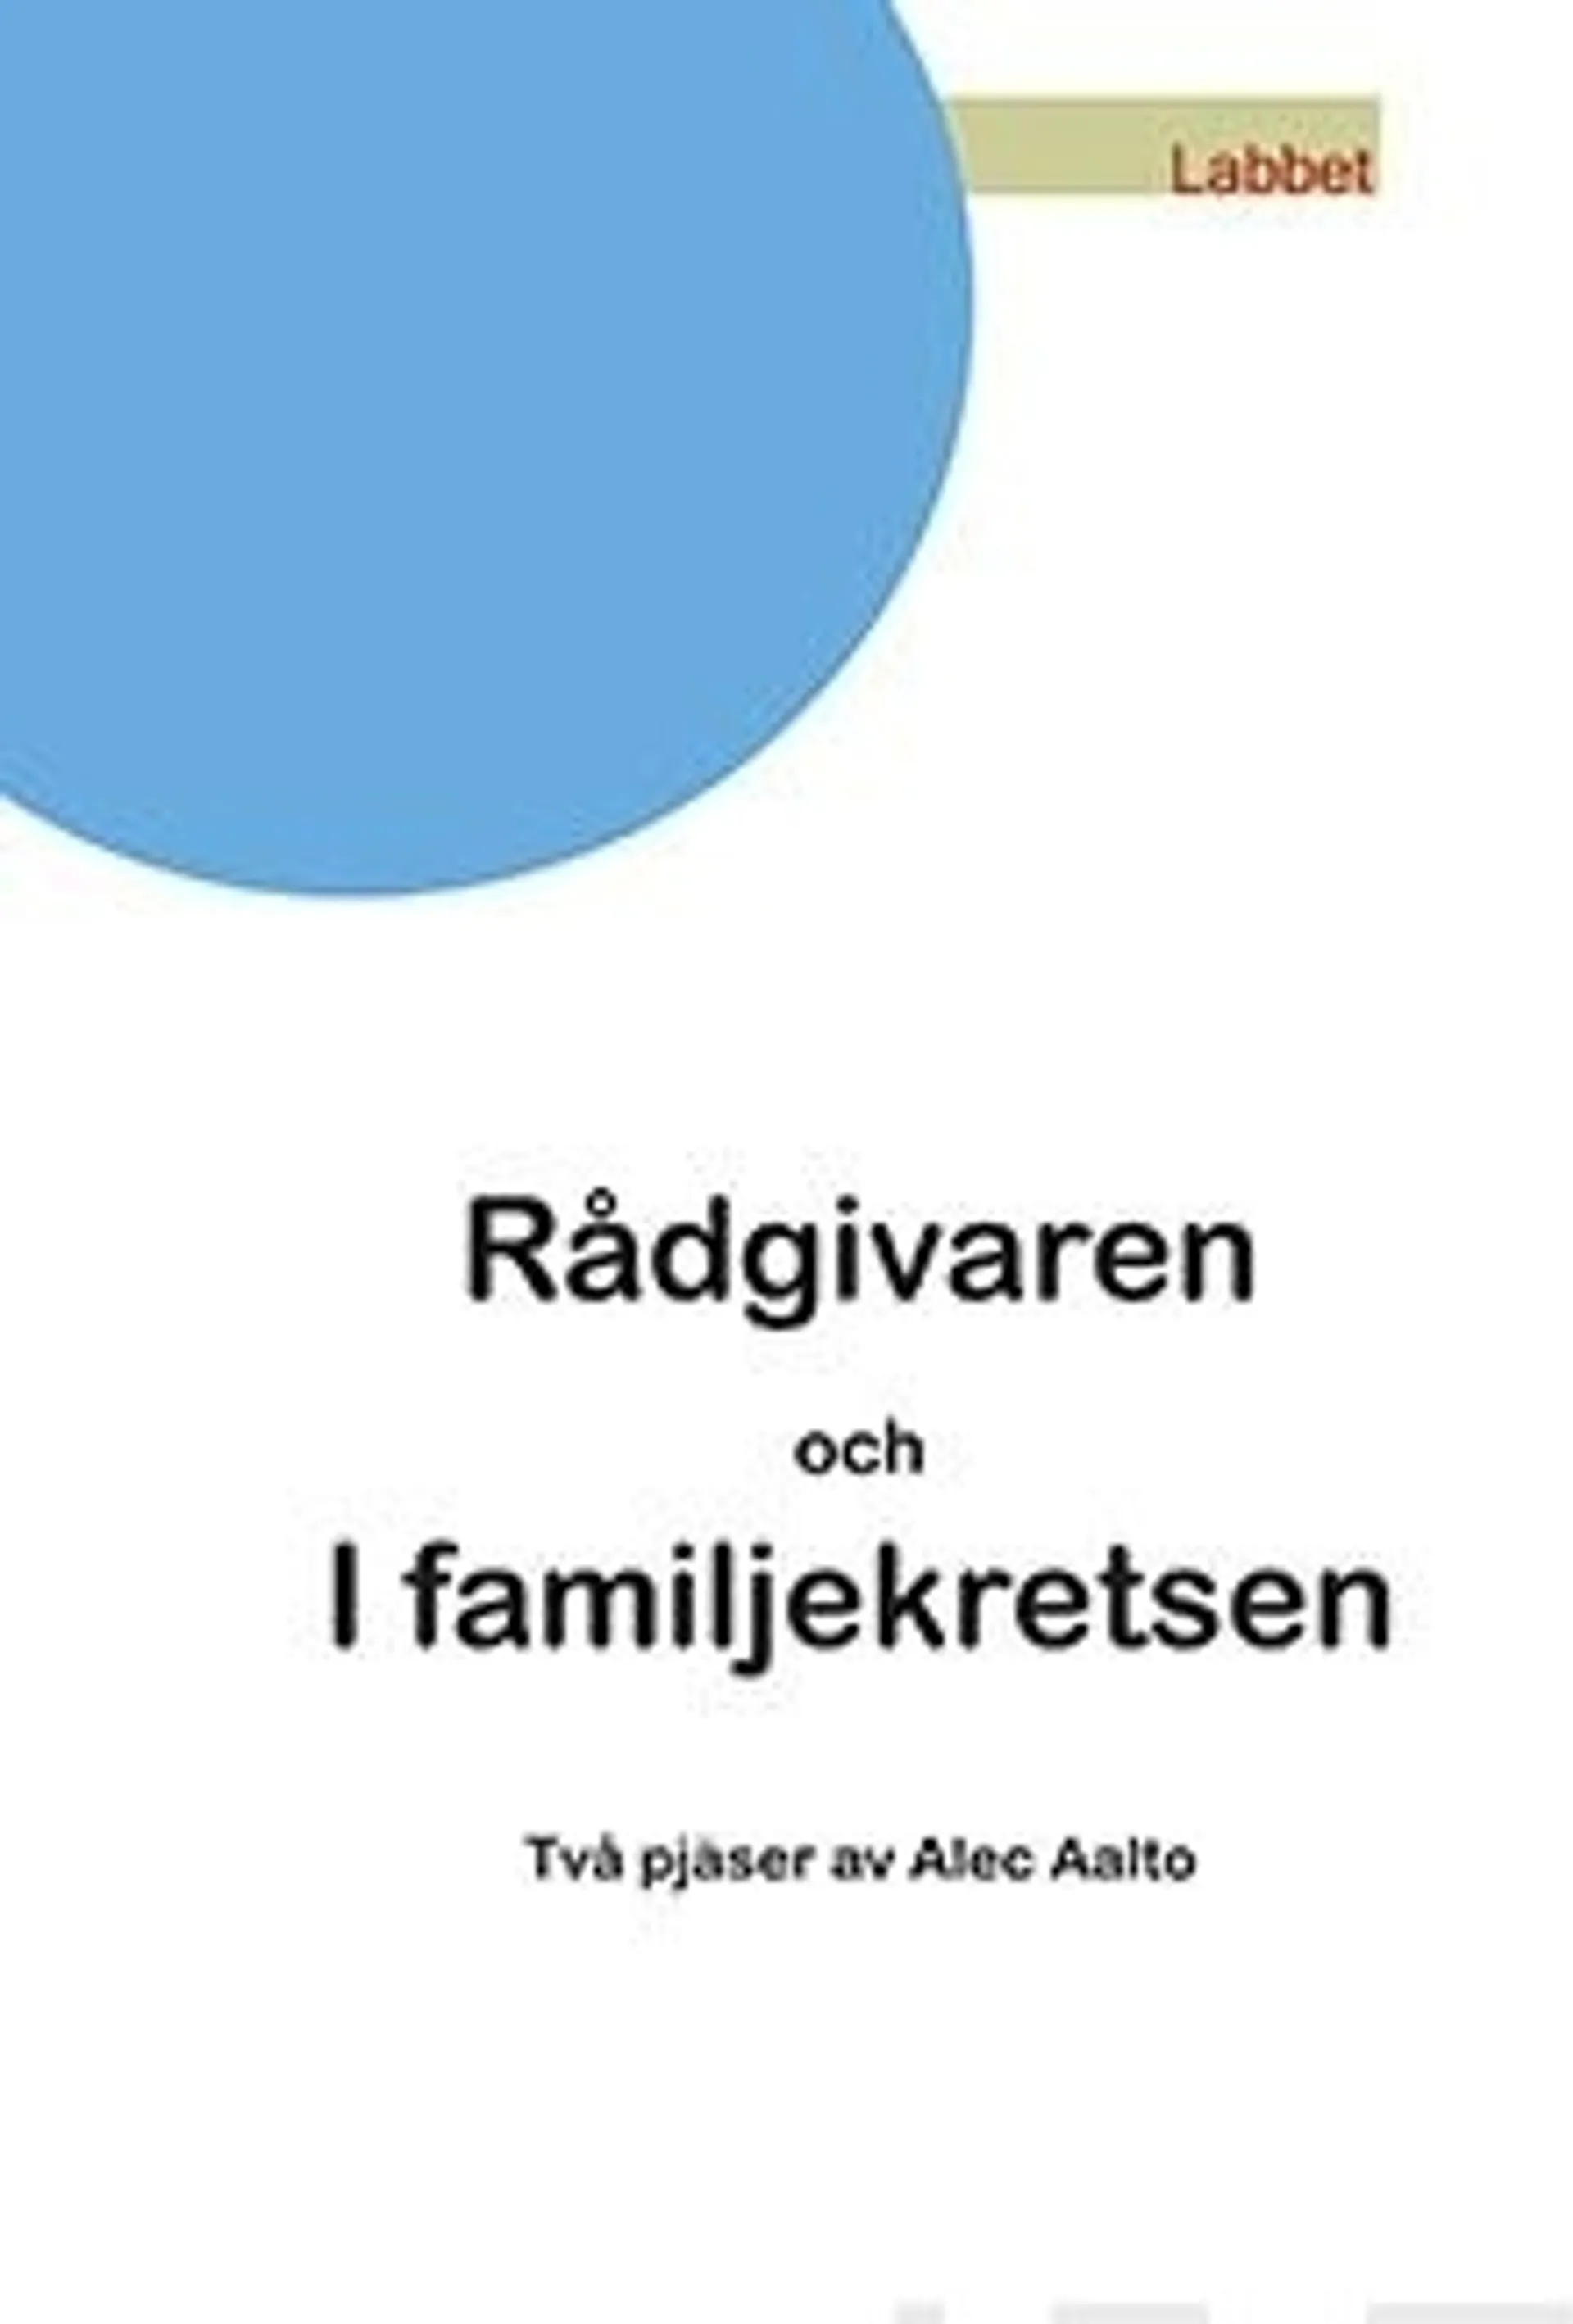 Aalto, Rådgivaren och I familjekretsen